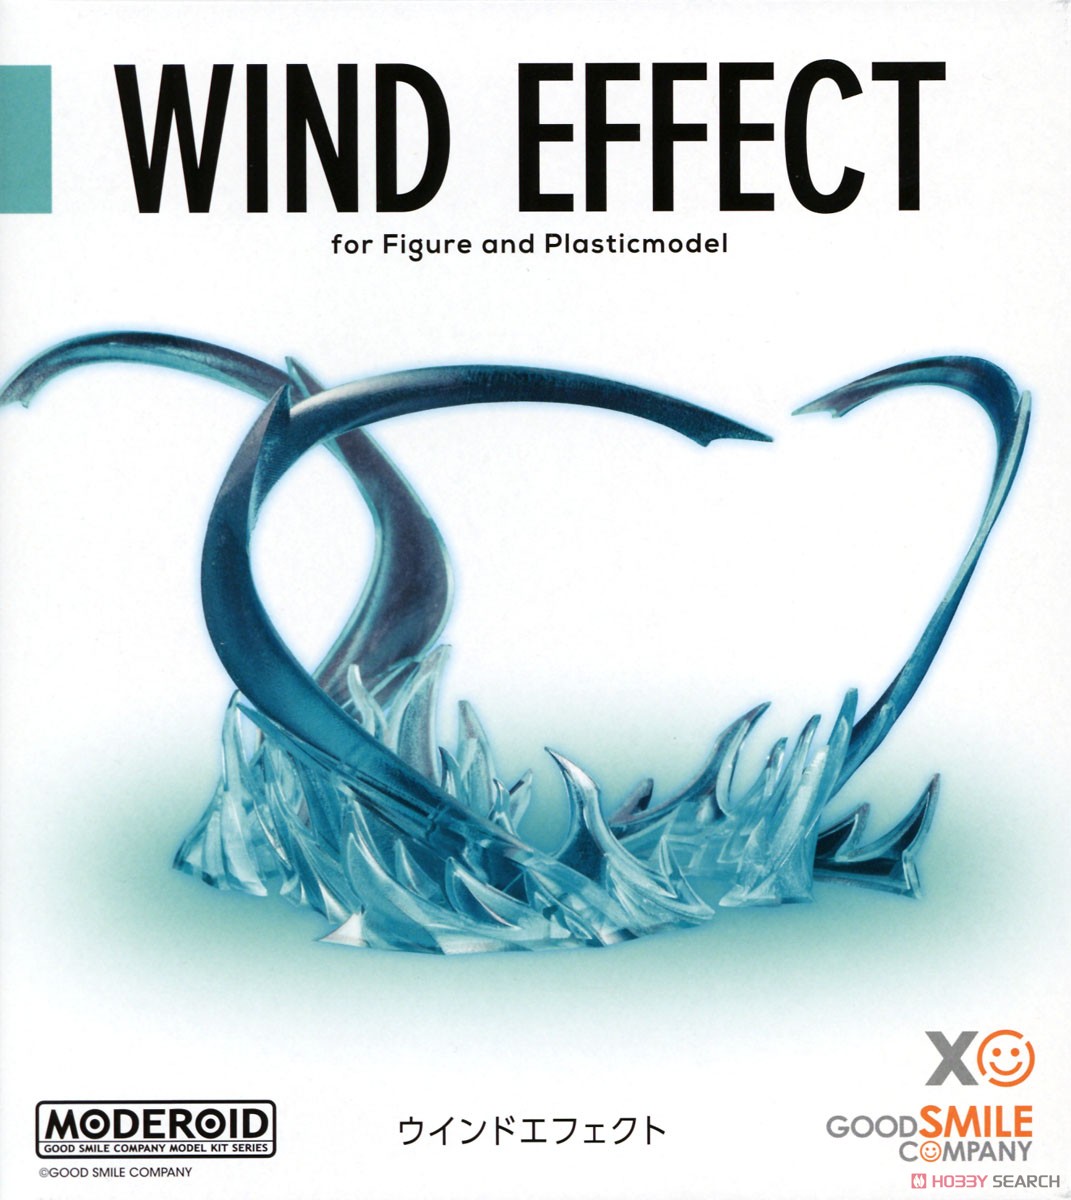 MODEROID Wind Effect (Plastic model) Package1